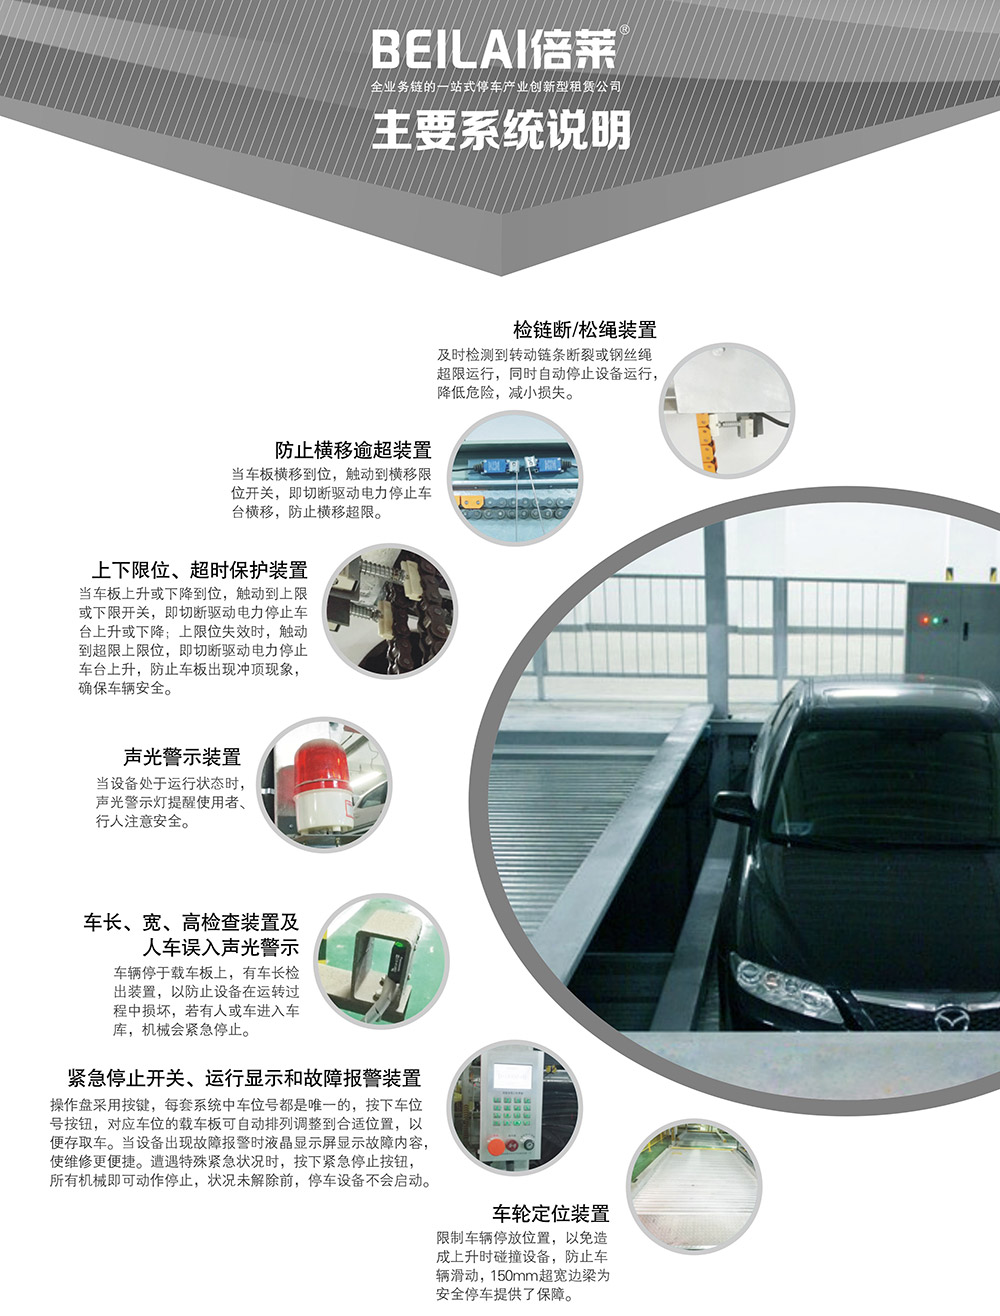 重庆负一正一地坑PSH2D1二层升降横移立体停车设备主要系统说明.jpg